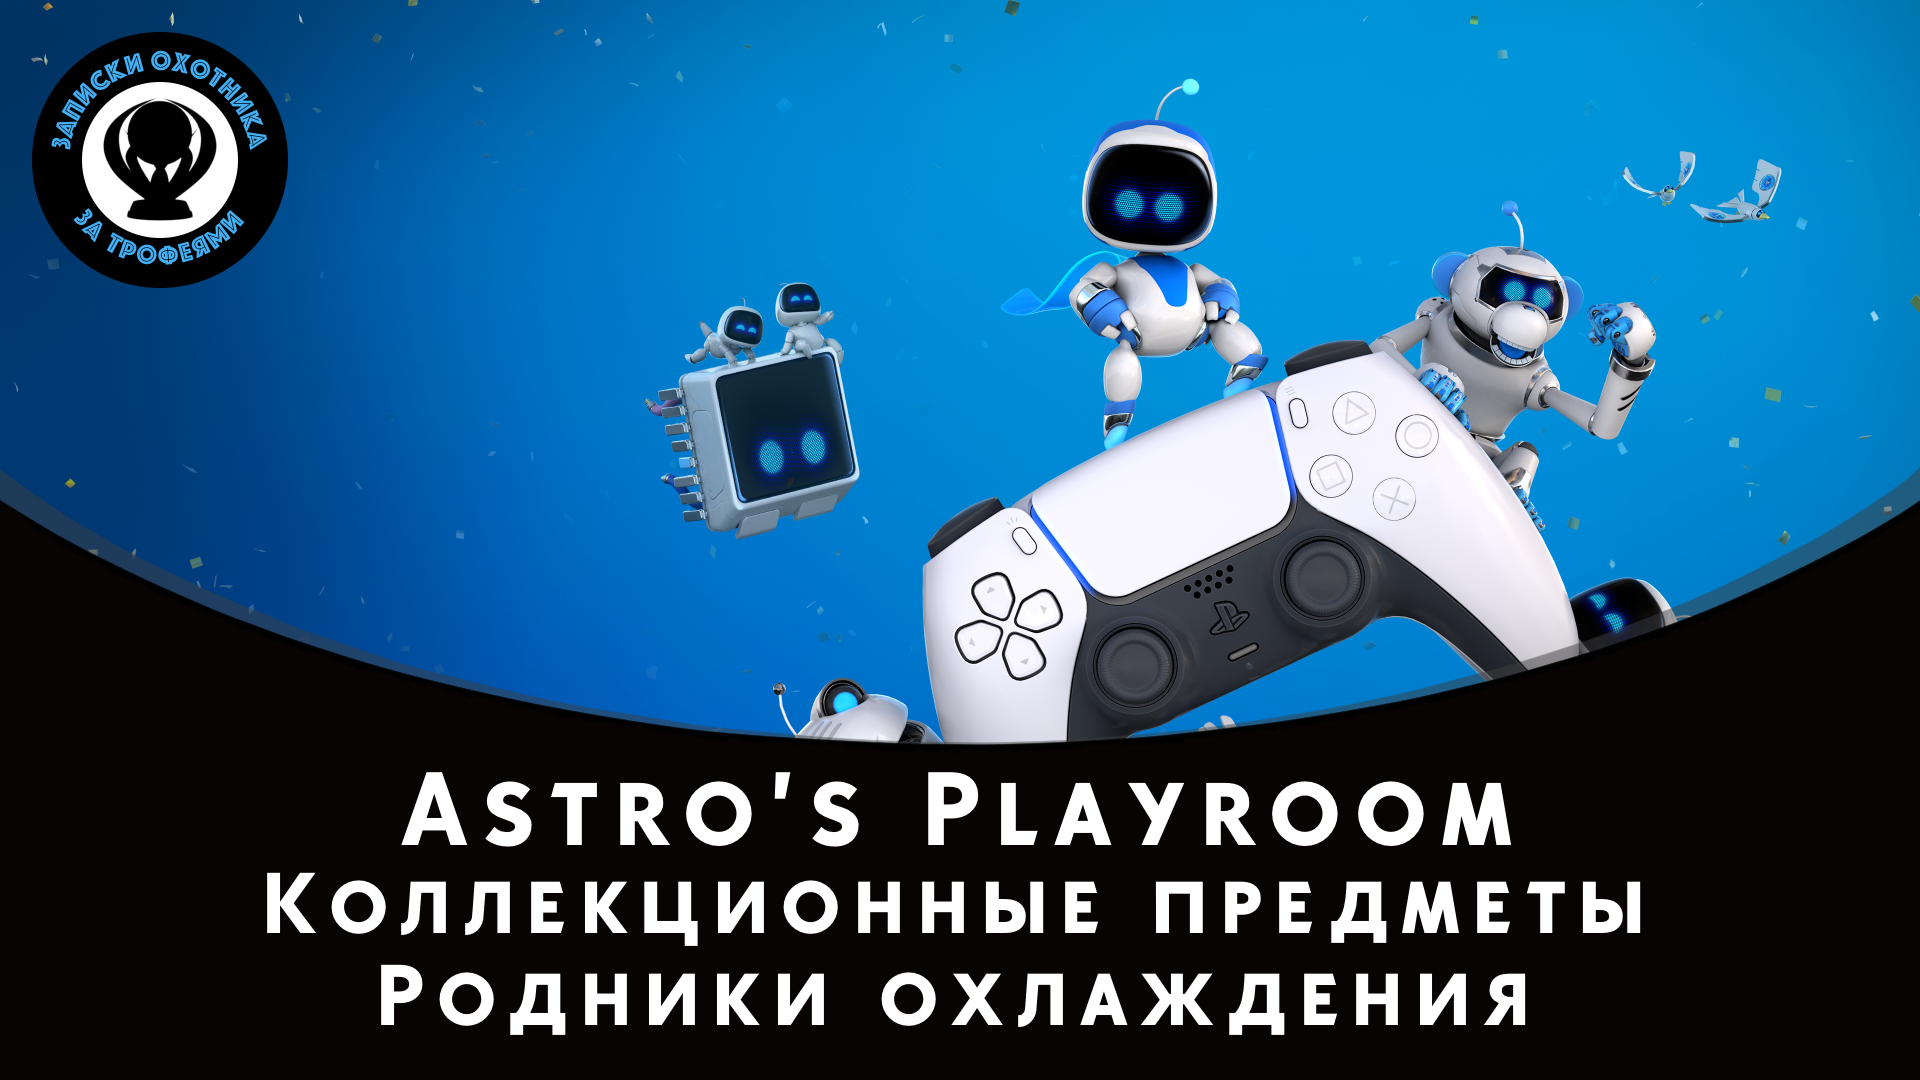 Astro’s Playroom — Все коллекционные предметы "Родники охлаждения" (Артефакты и Детали)